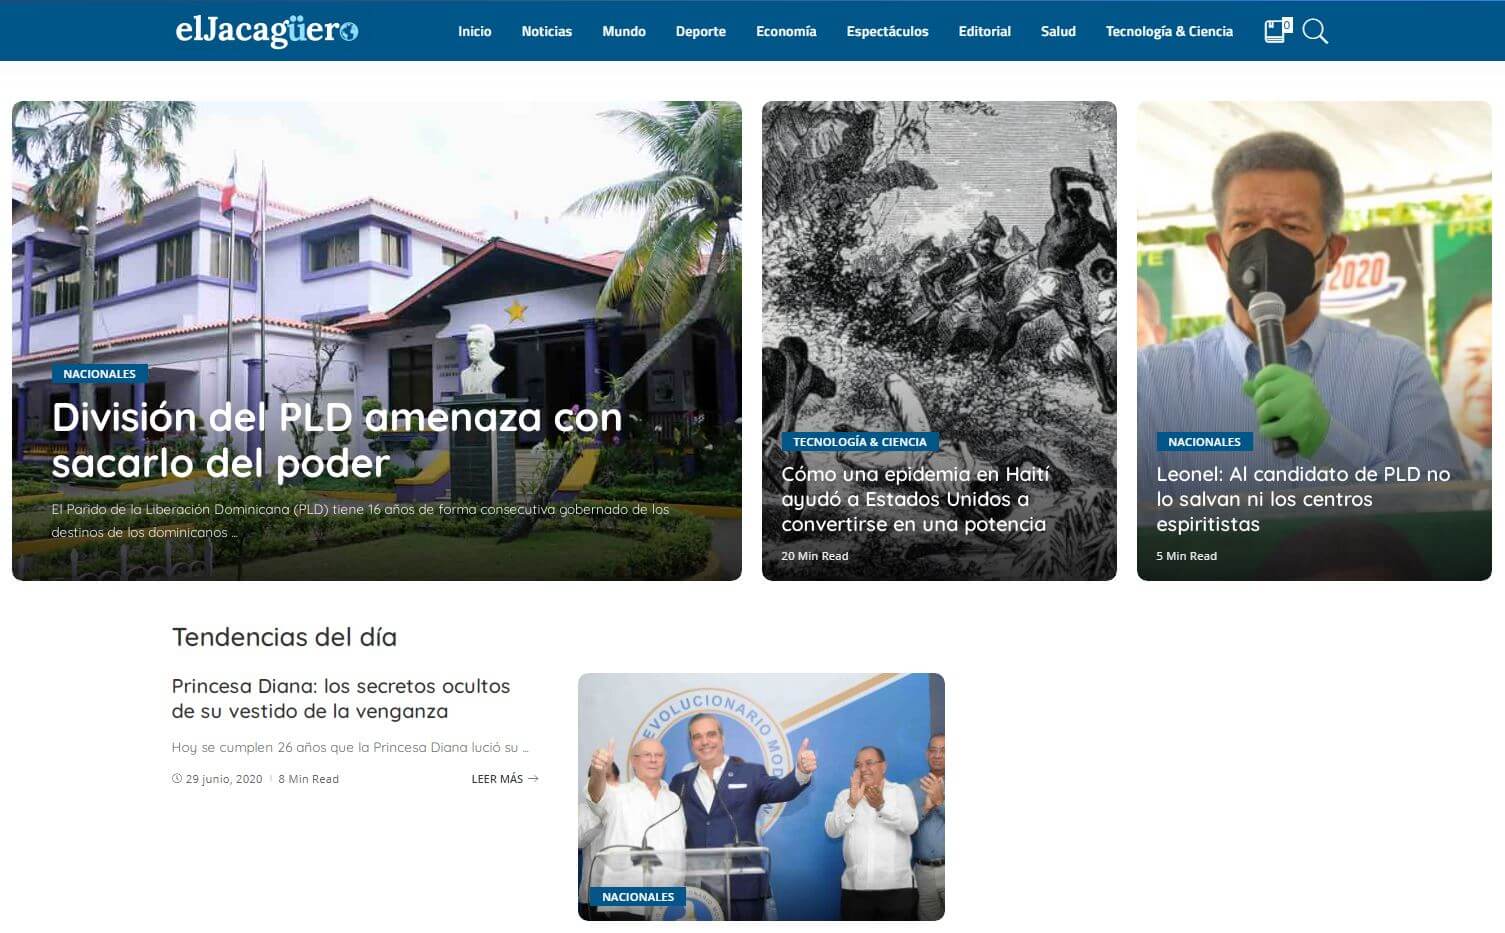 periodicos de republica dominicana 15 el jacaguero website